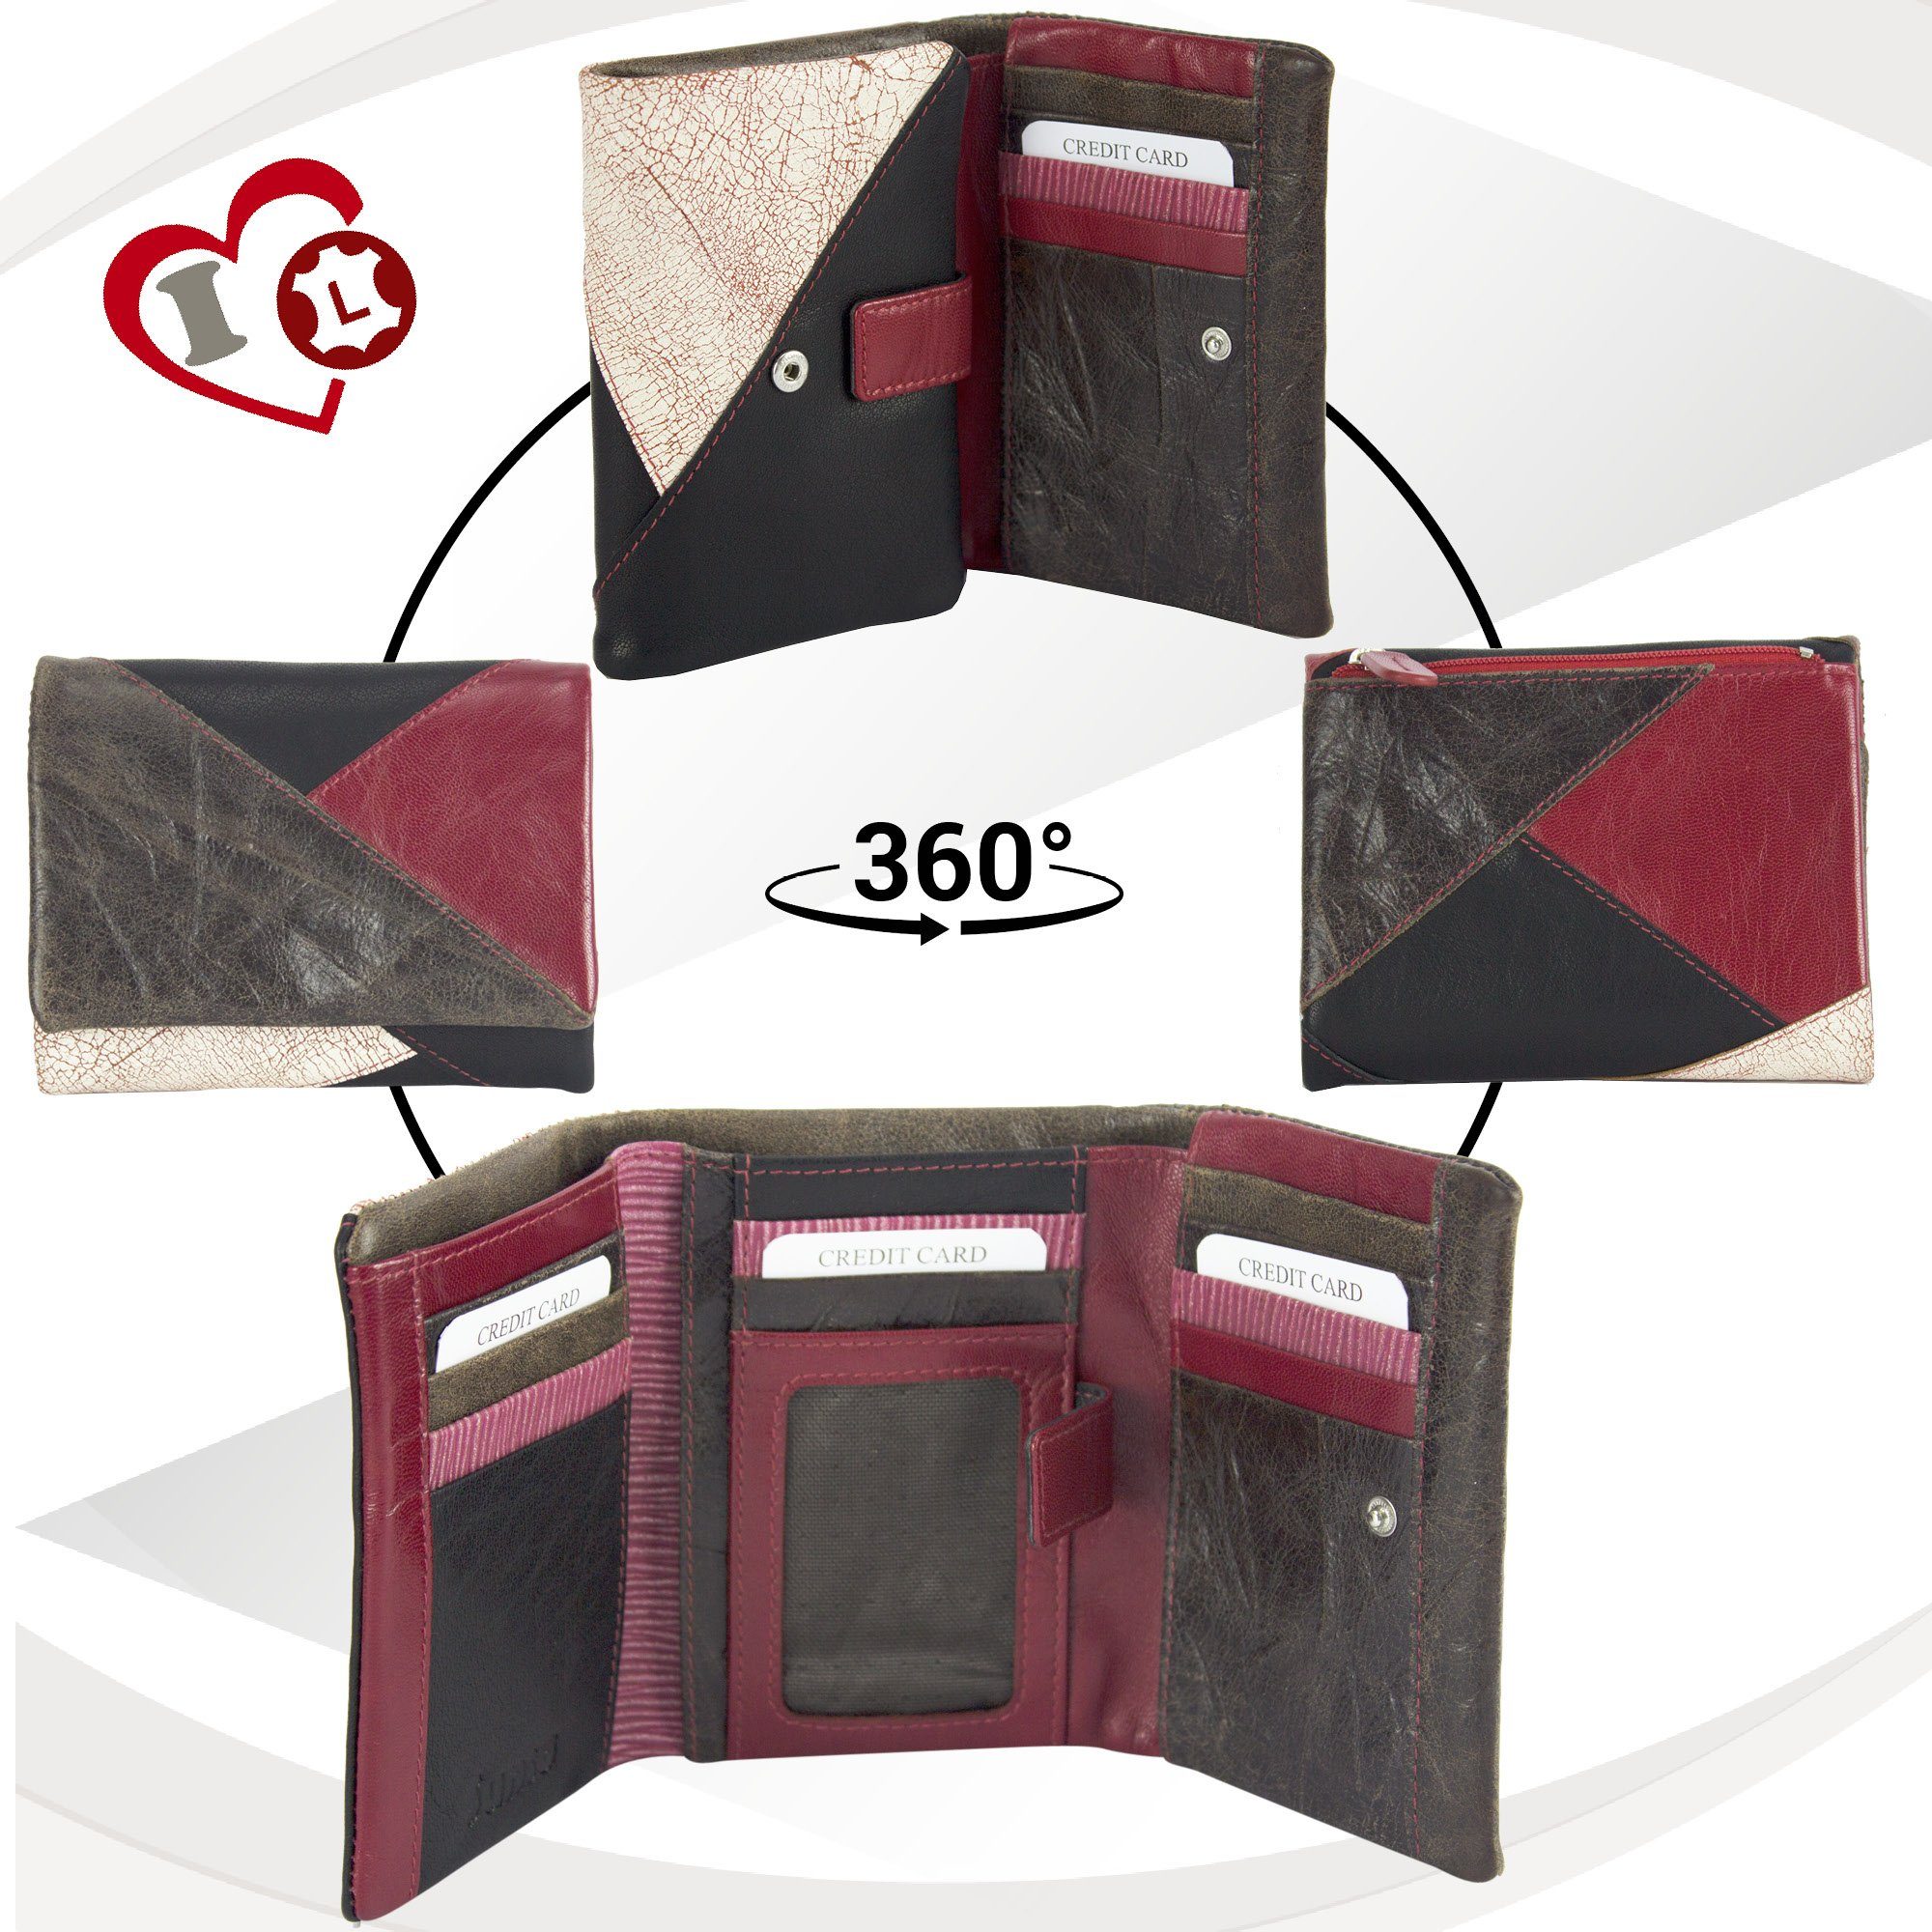 mit RFID-Schutz, echt Geldbörse eleganten Design, rot Leder, Geldbeutel Portemonnaie zeitlos Brieftasche, Leder Sunsa in